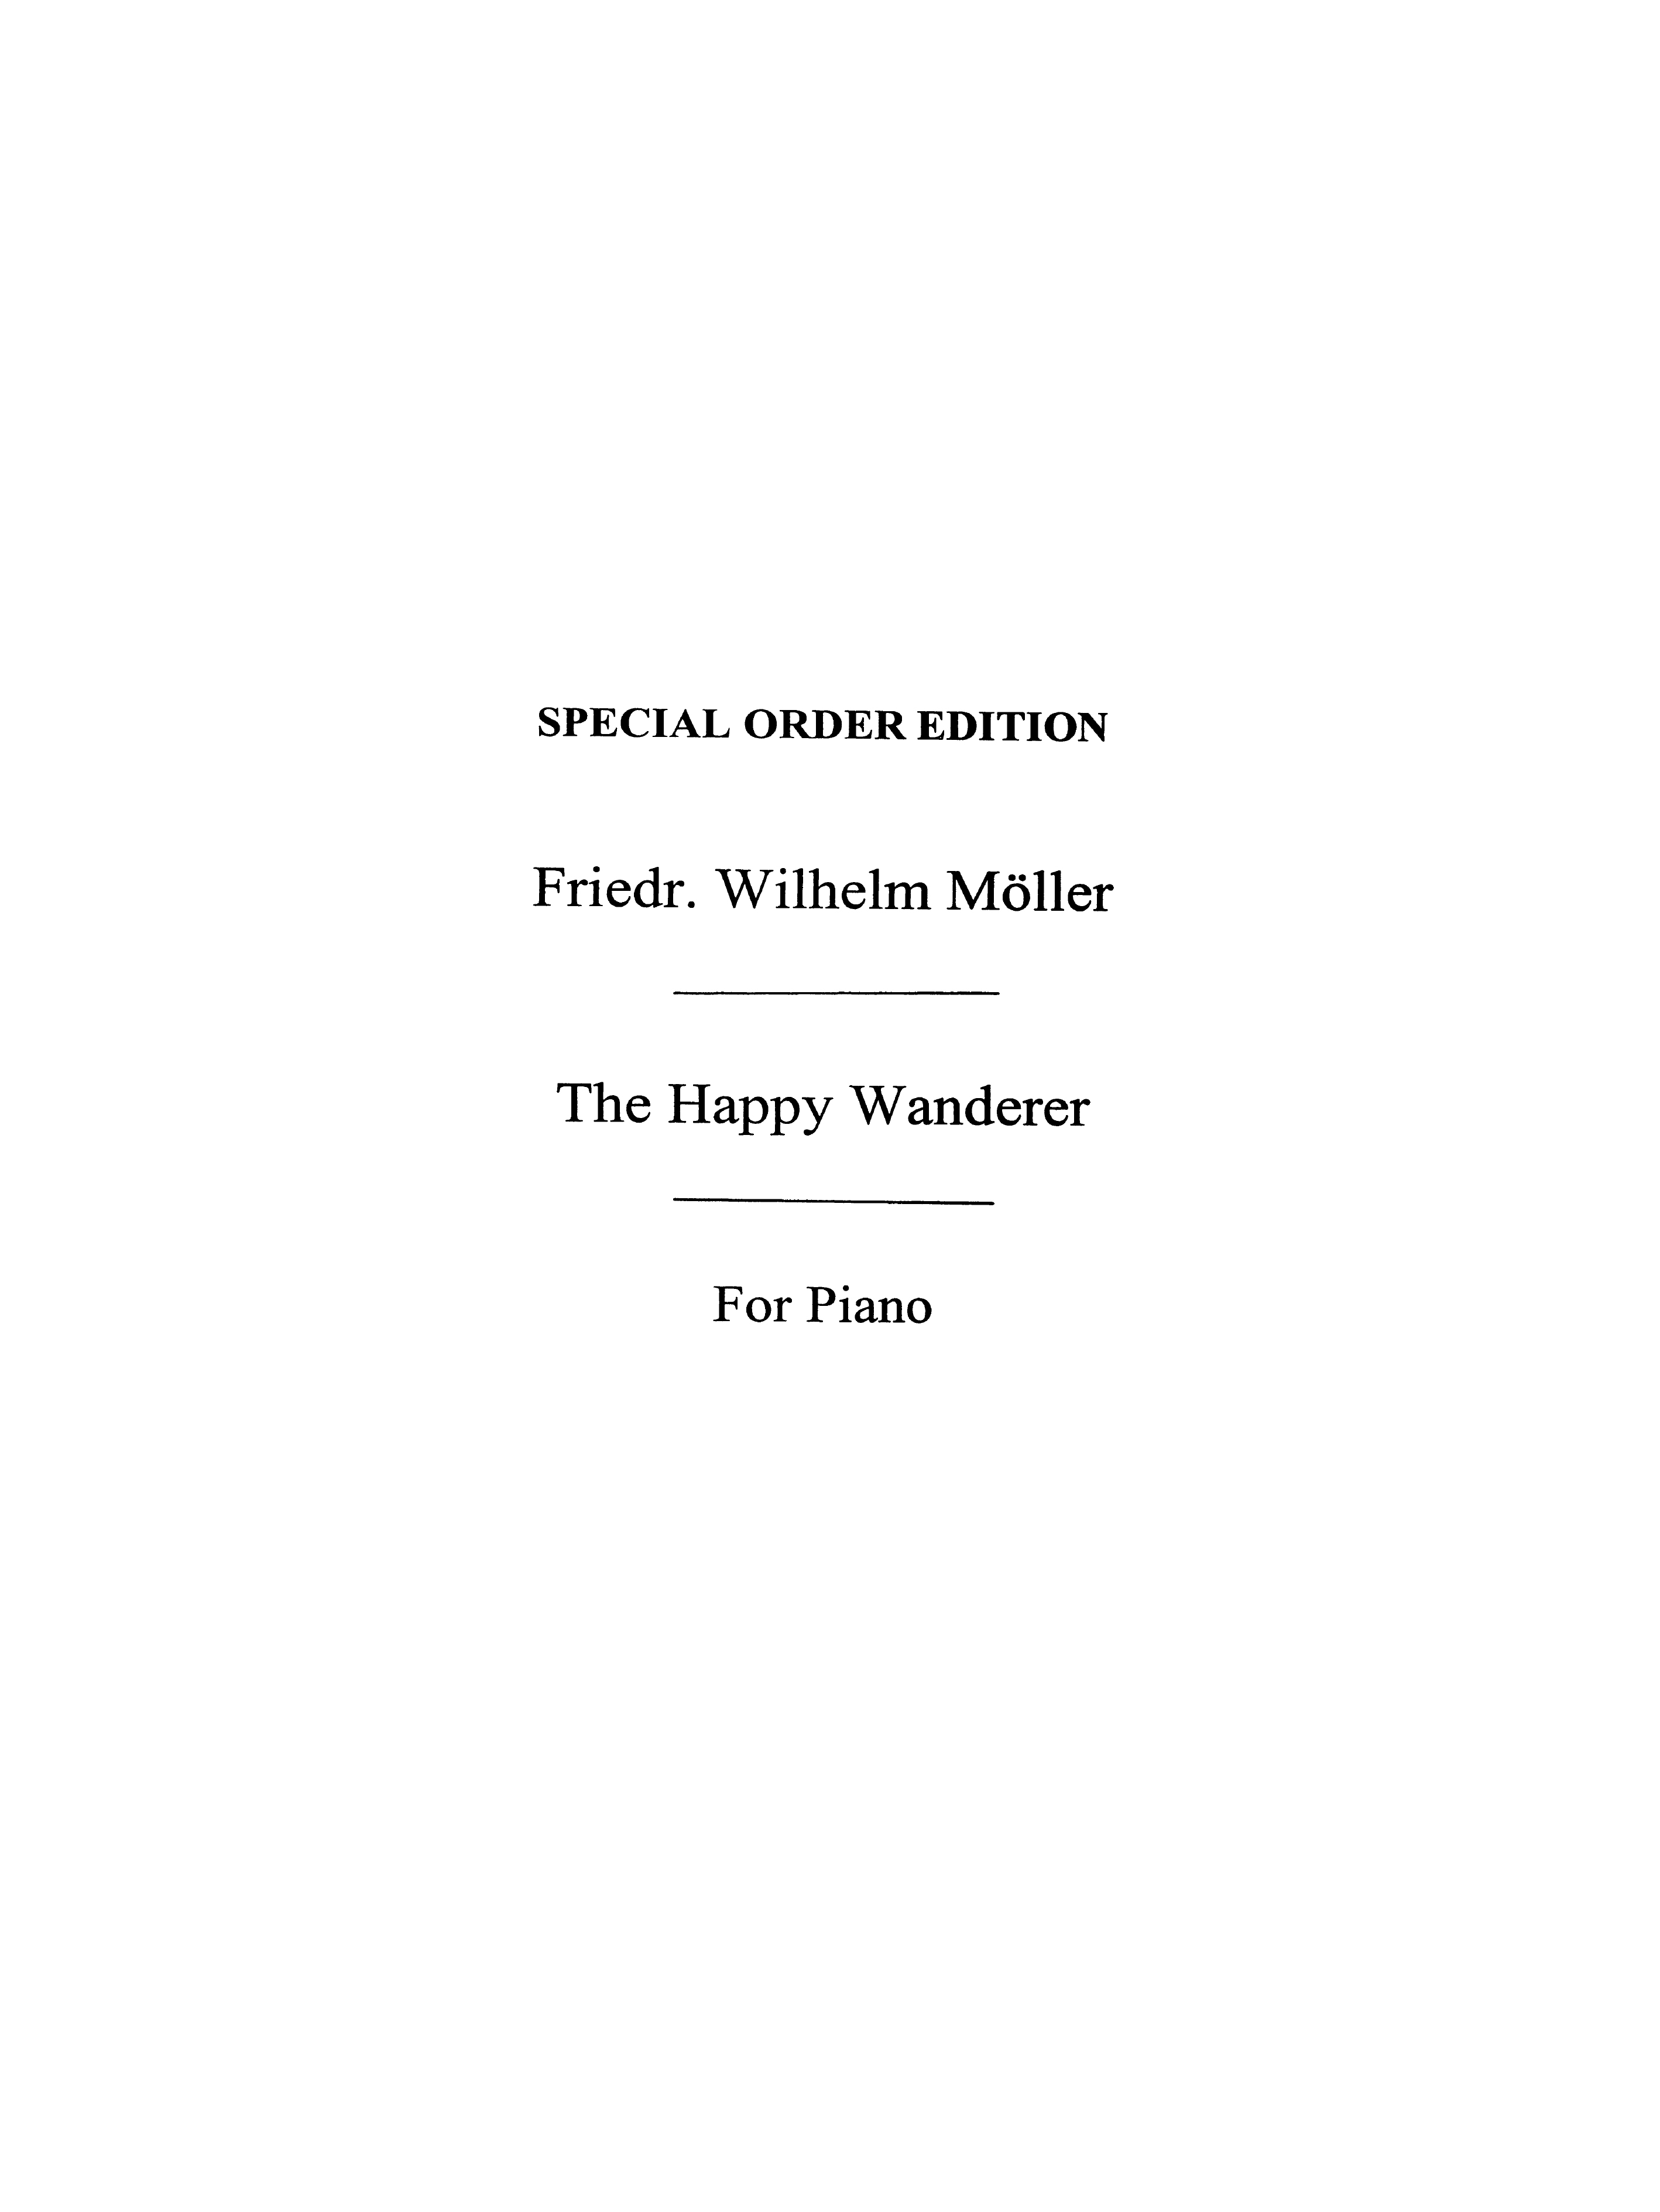 Moller, F W The Happy Wanderer Piano Transcription Pf